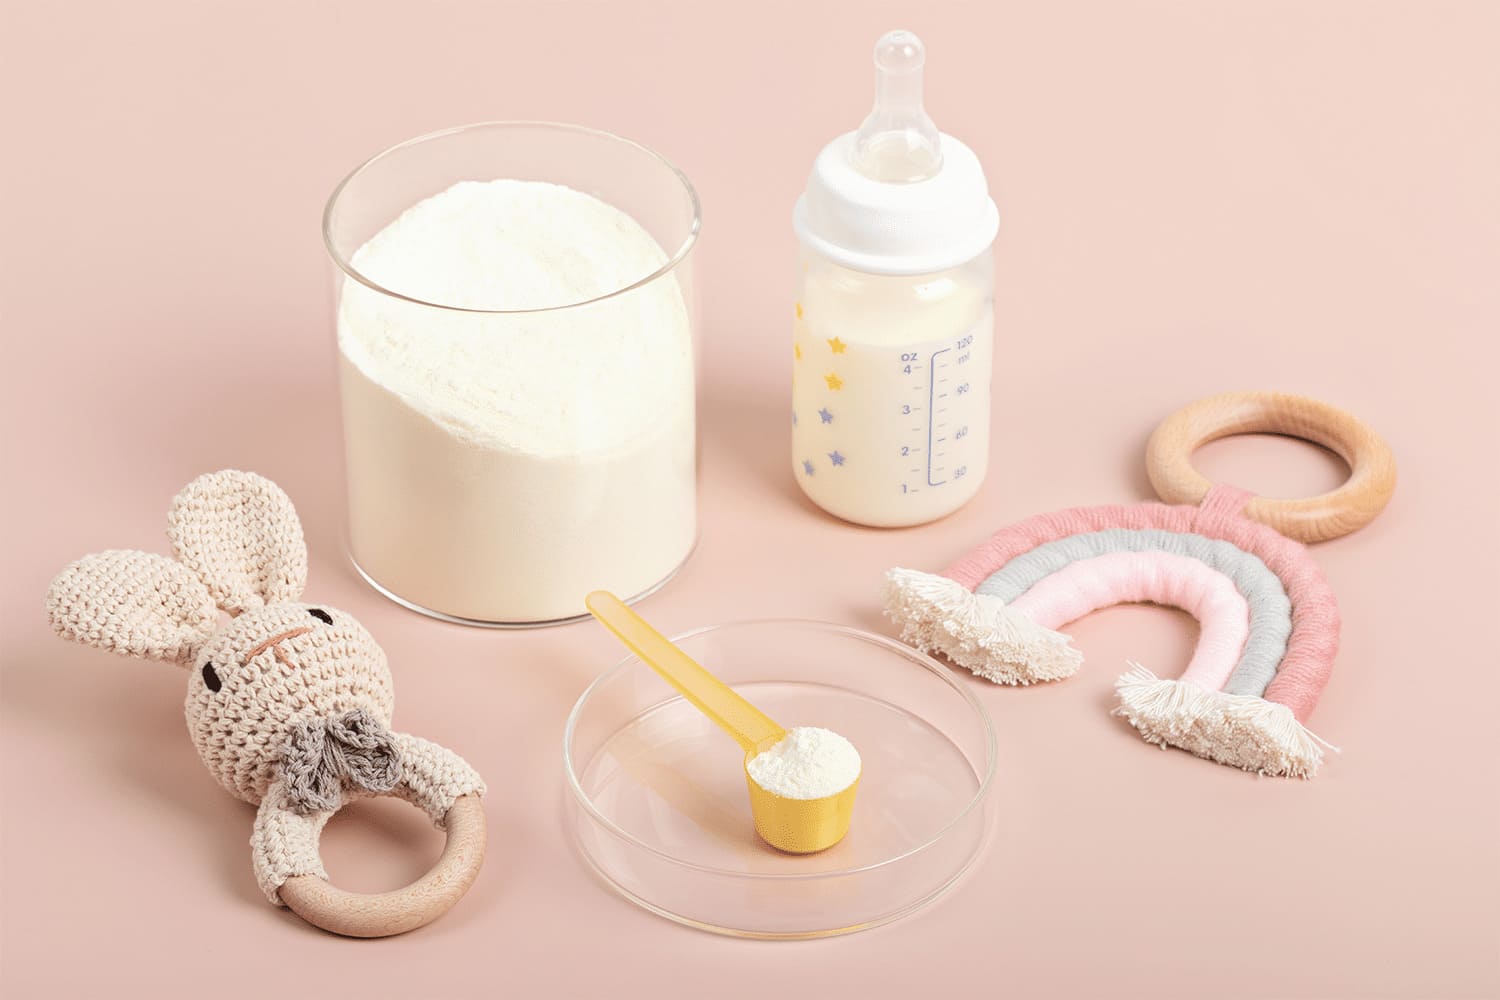 các loại sữa non cho trẻ sơ sinh 